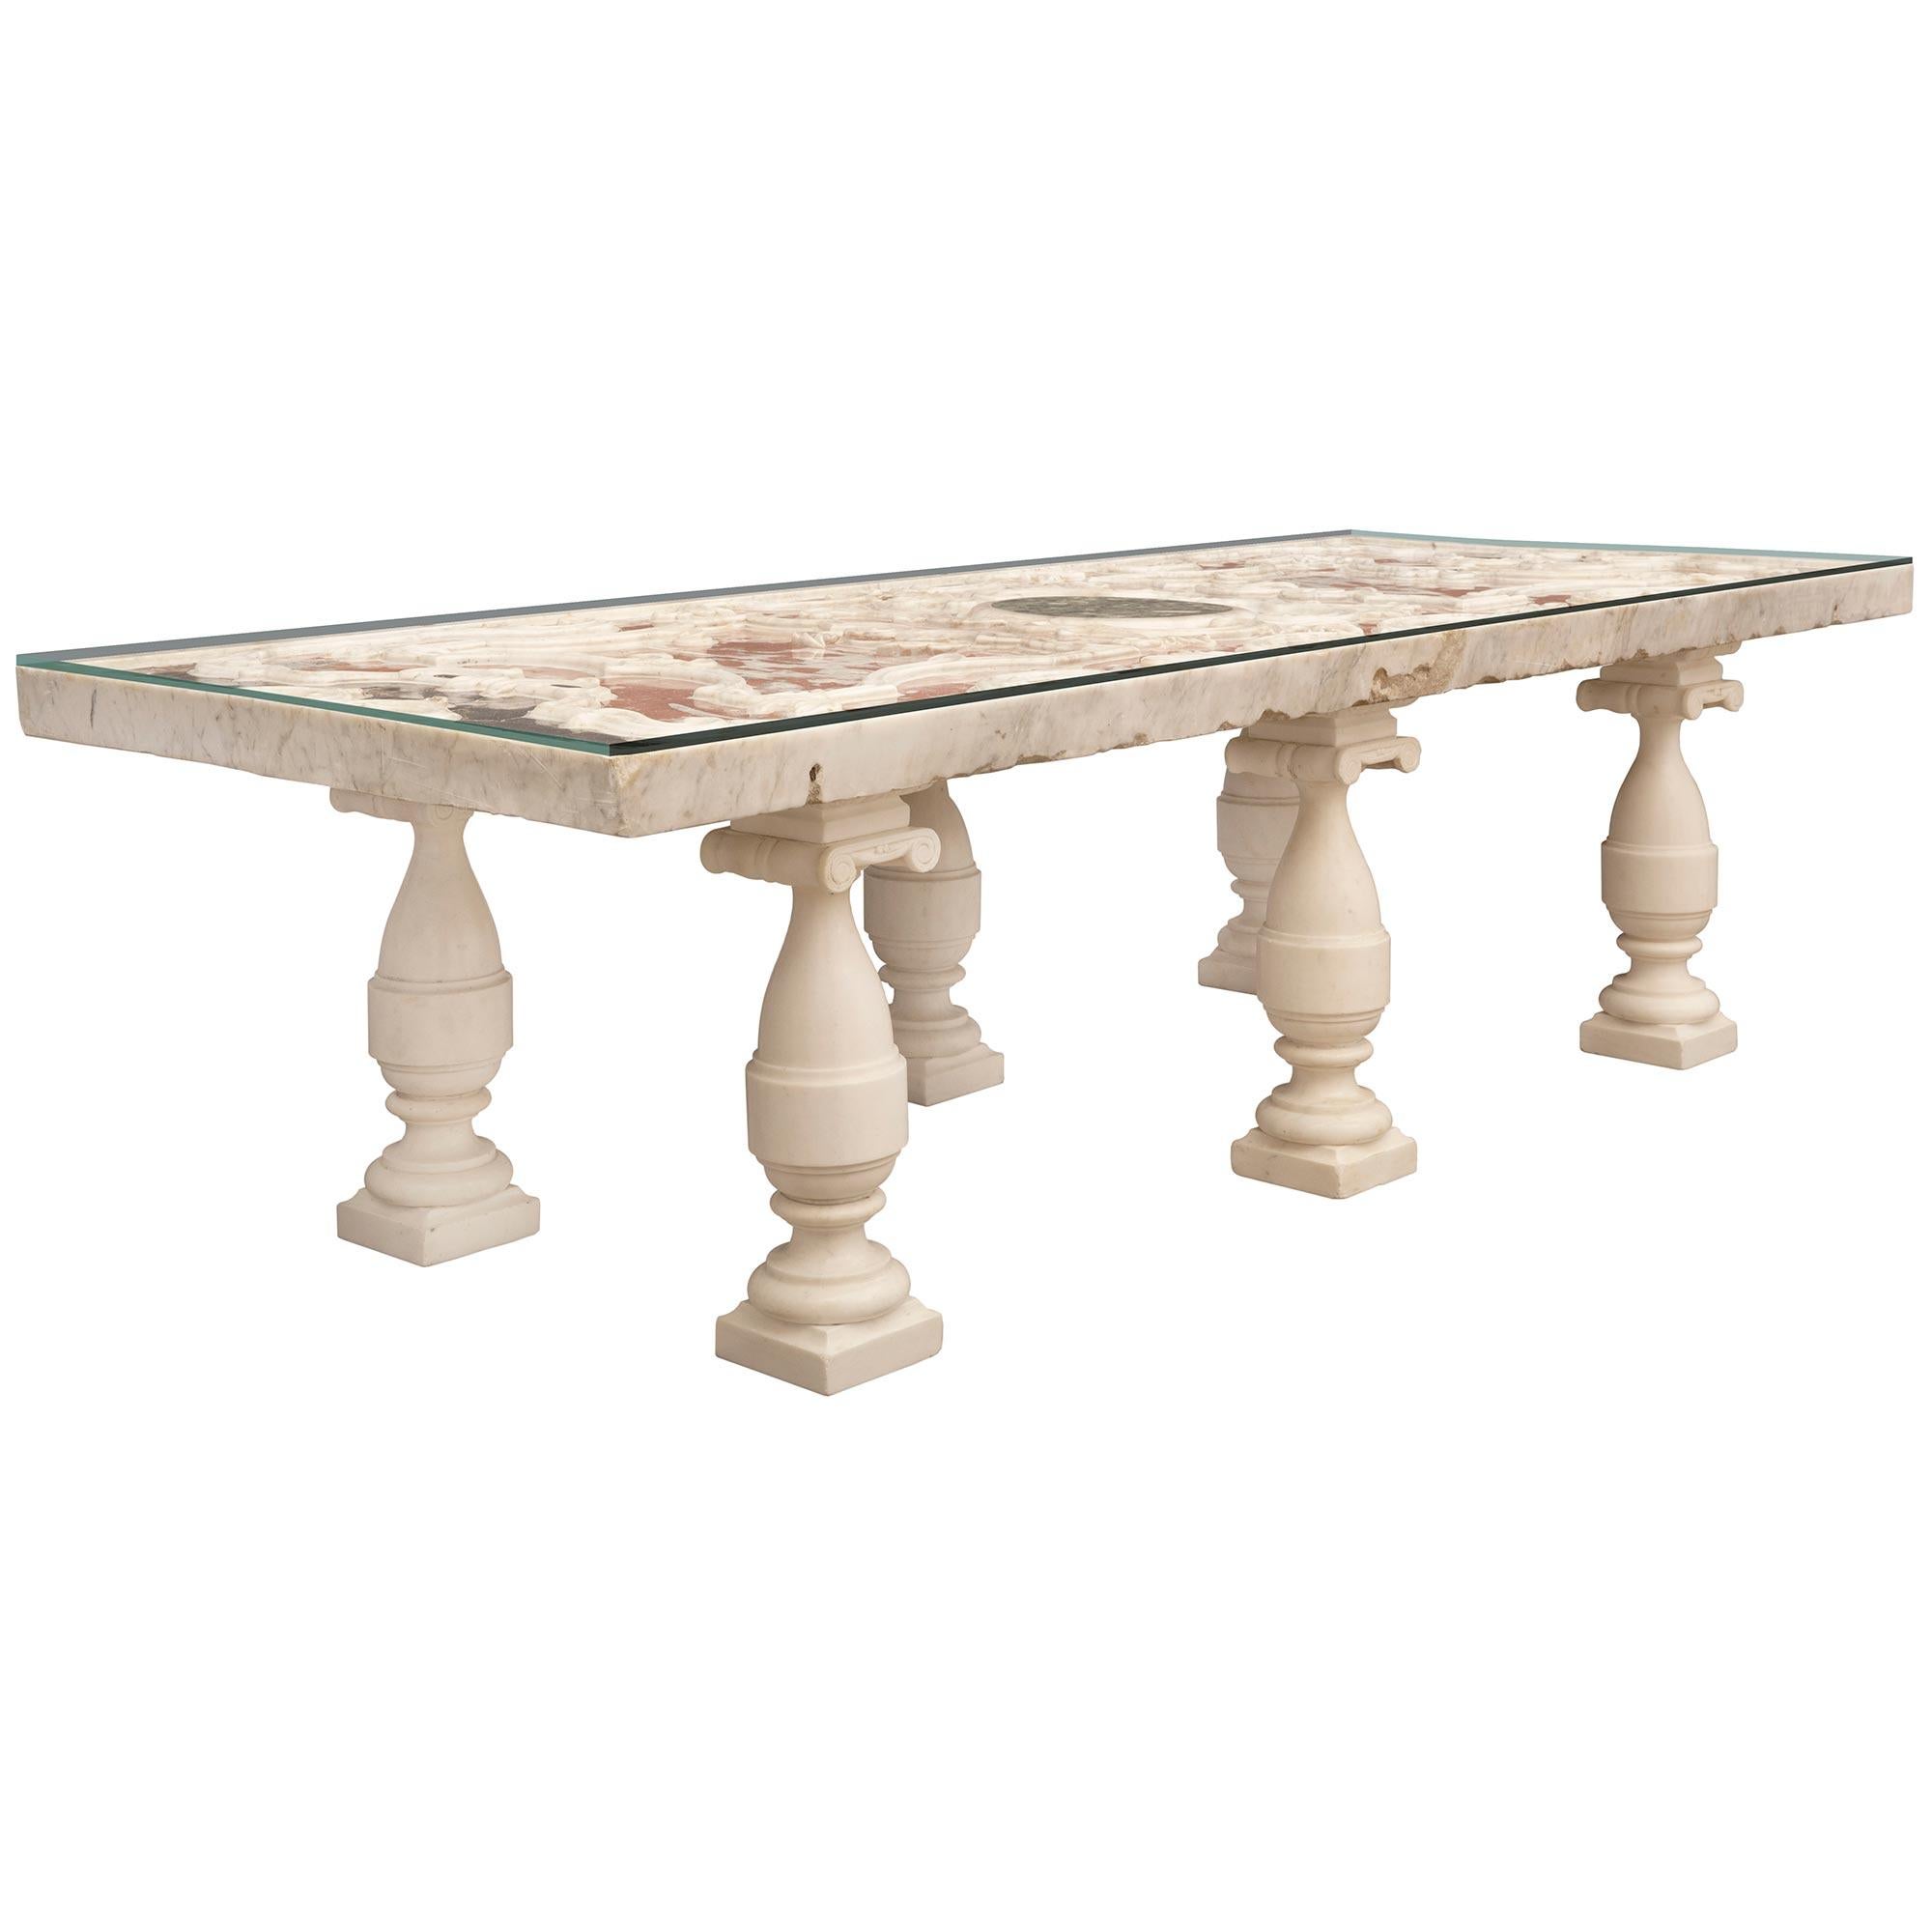 Une sensationnelle et rare table basse à plateau en marbre d'époque Louis XIV italienne du début du XVIIIe siècle. Le plateau rectangulaire est surélevé par de remarquables supports en marbre blanc de Carrare en forme de balustre du XIXe siècle,